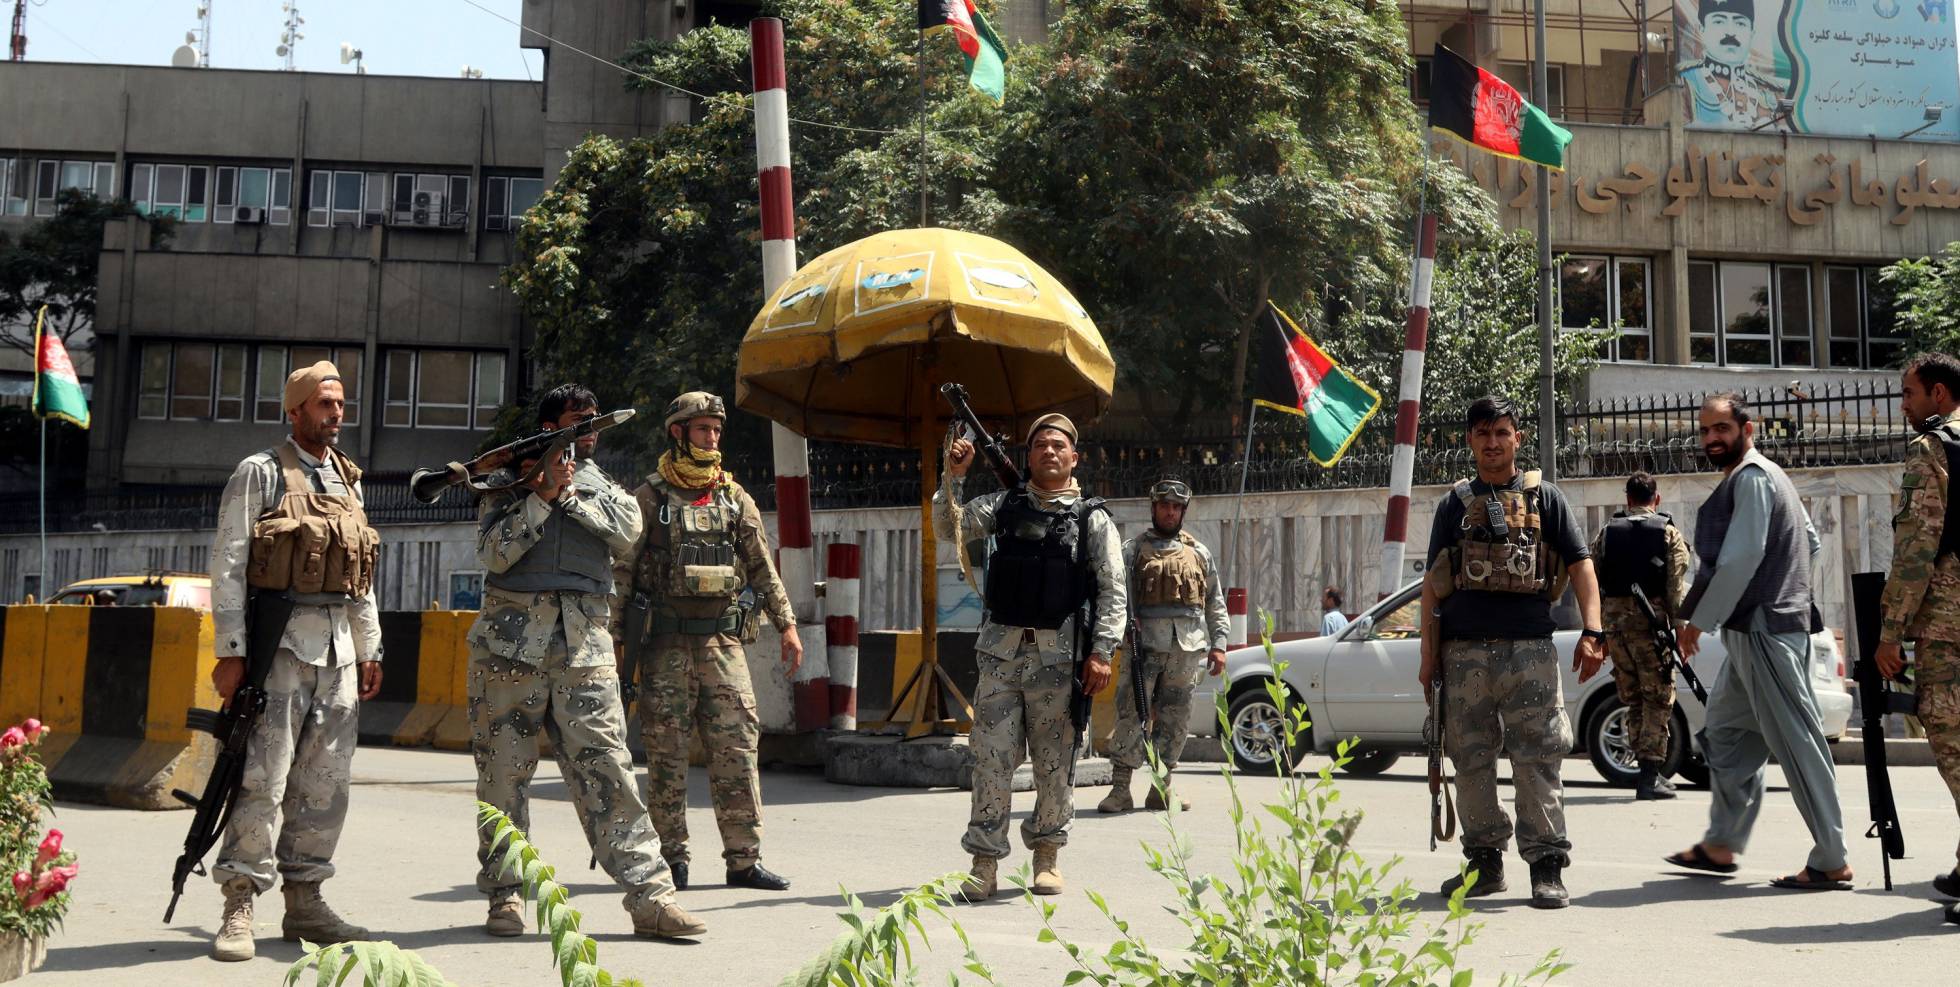 El avance de los talibanes en Afganistán, en imágenes 1629019885_944193_1629024436_noticia_normal